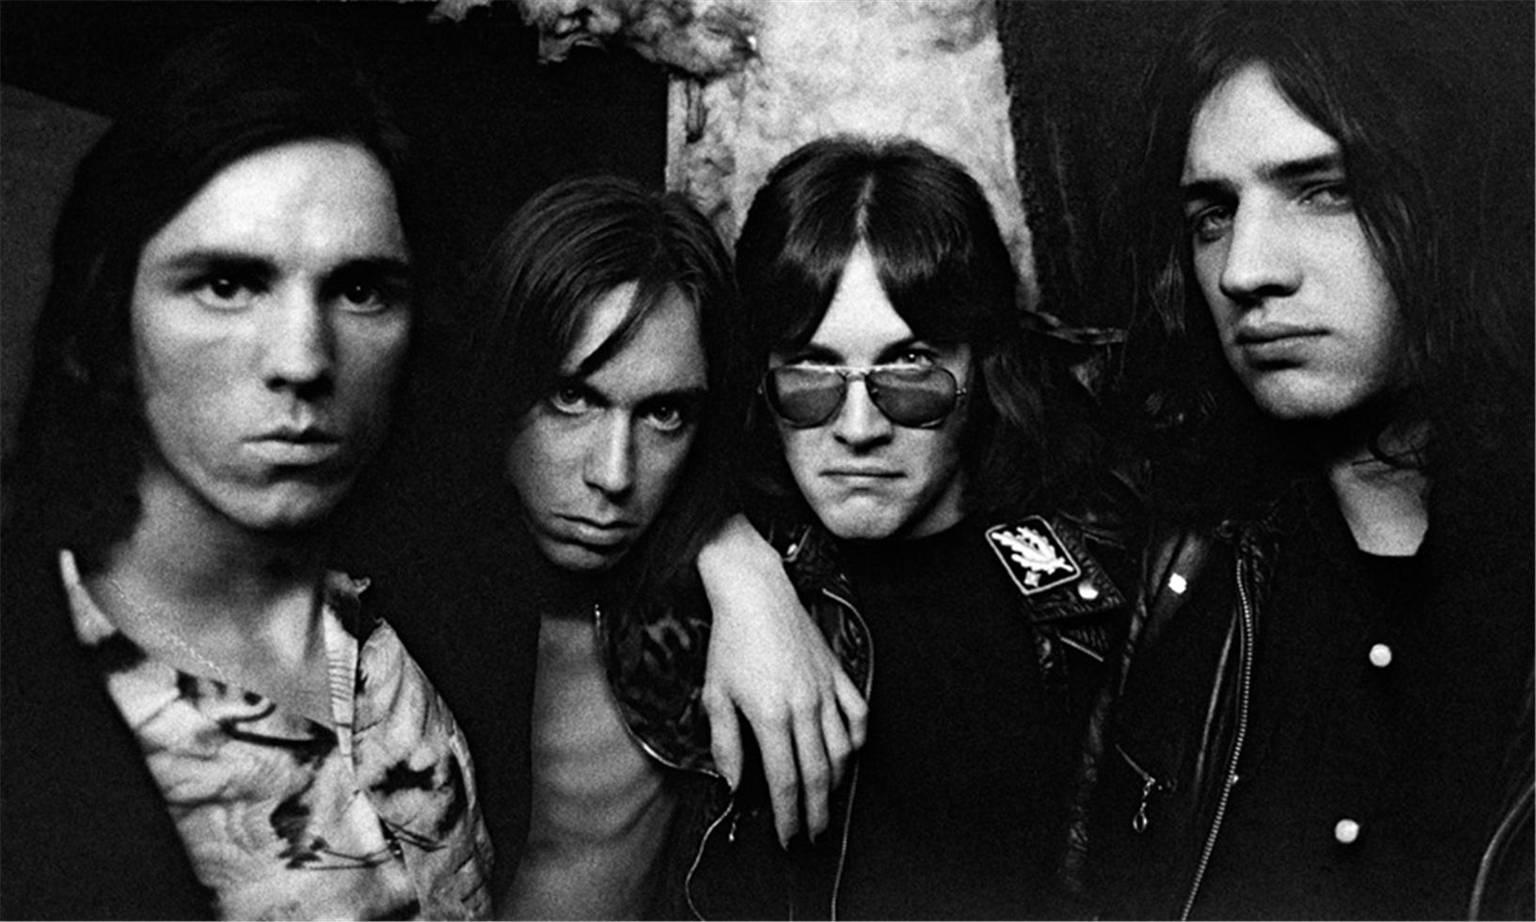 Mick Rock Portrait Photograph - Stooges 1972